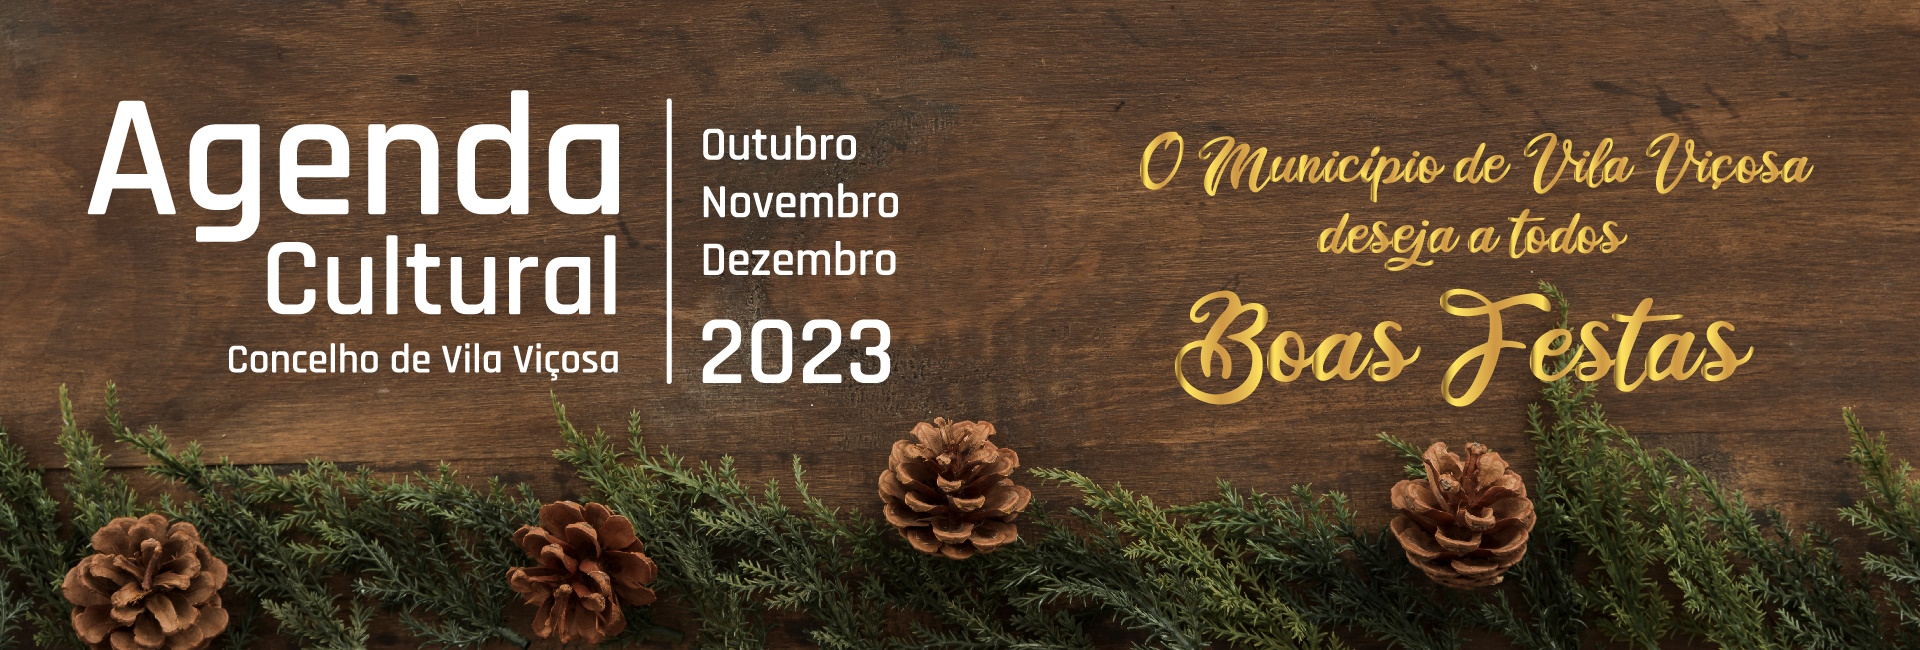 Agenda Cultural – Outubro a Dezembro 2023